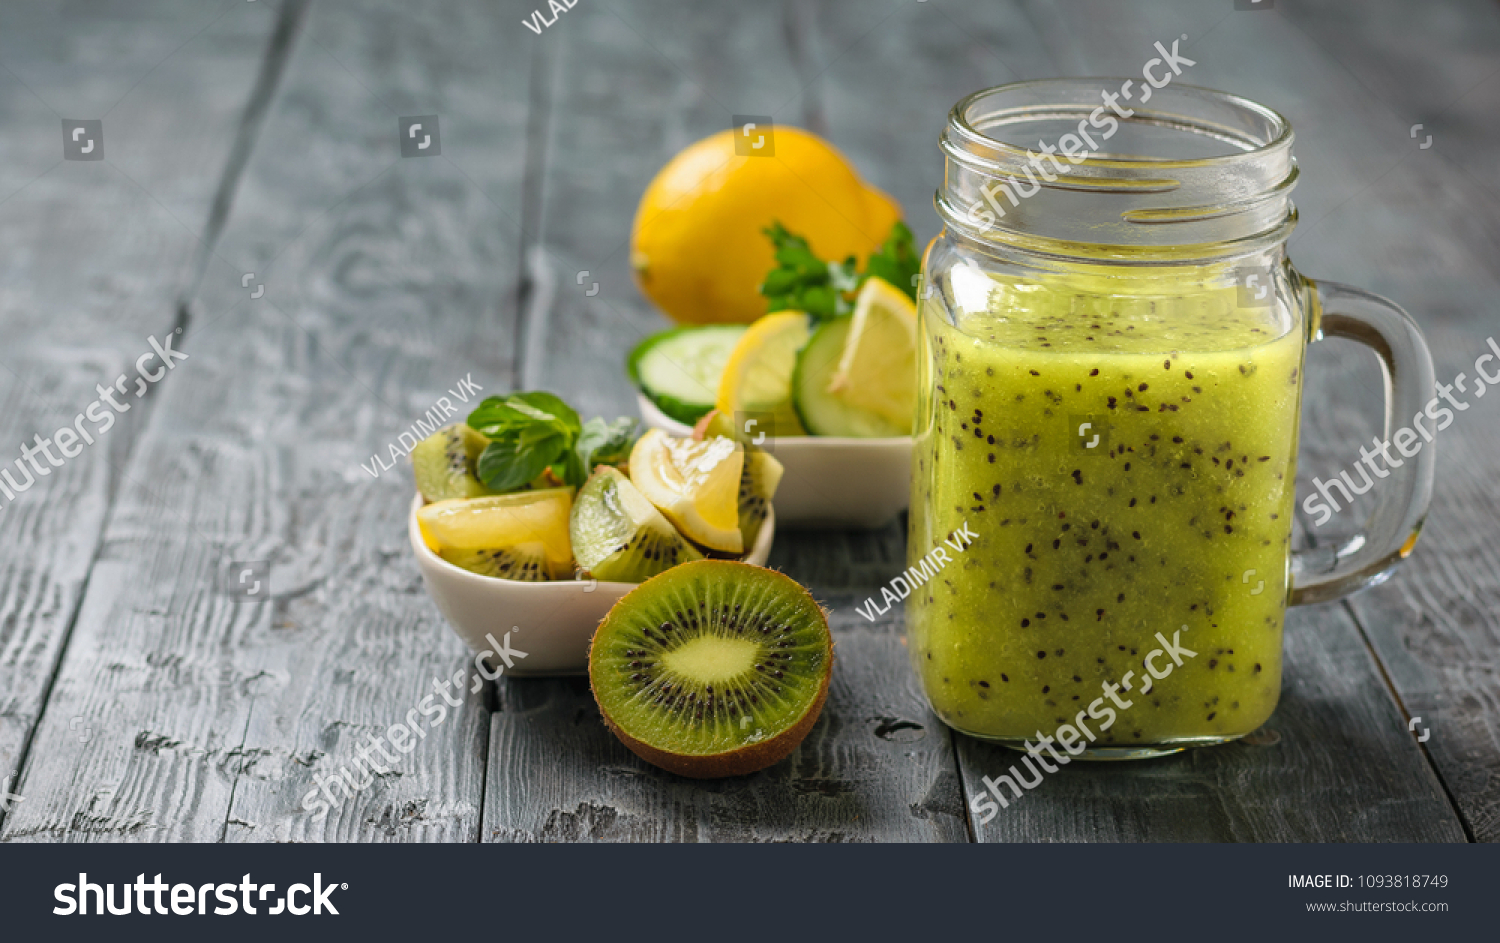 Киви и лимон отзывы. Огурец киви и лимон. Киви лимон петрушка вода. Декор на салат из лимона киви огурца. Киви лимон петрушка вода диета.